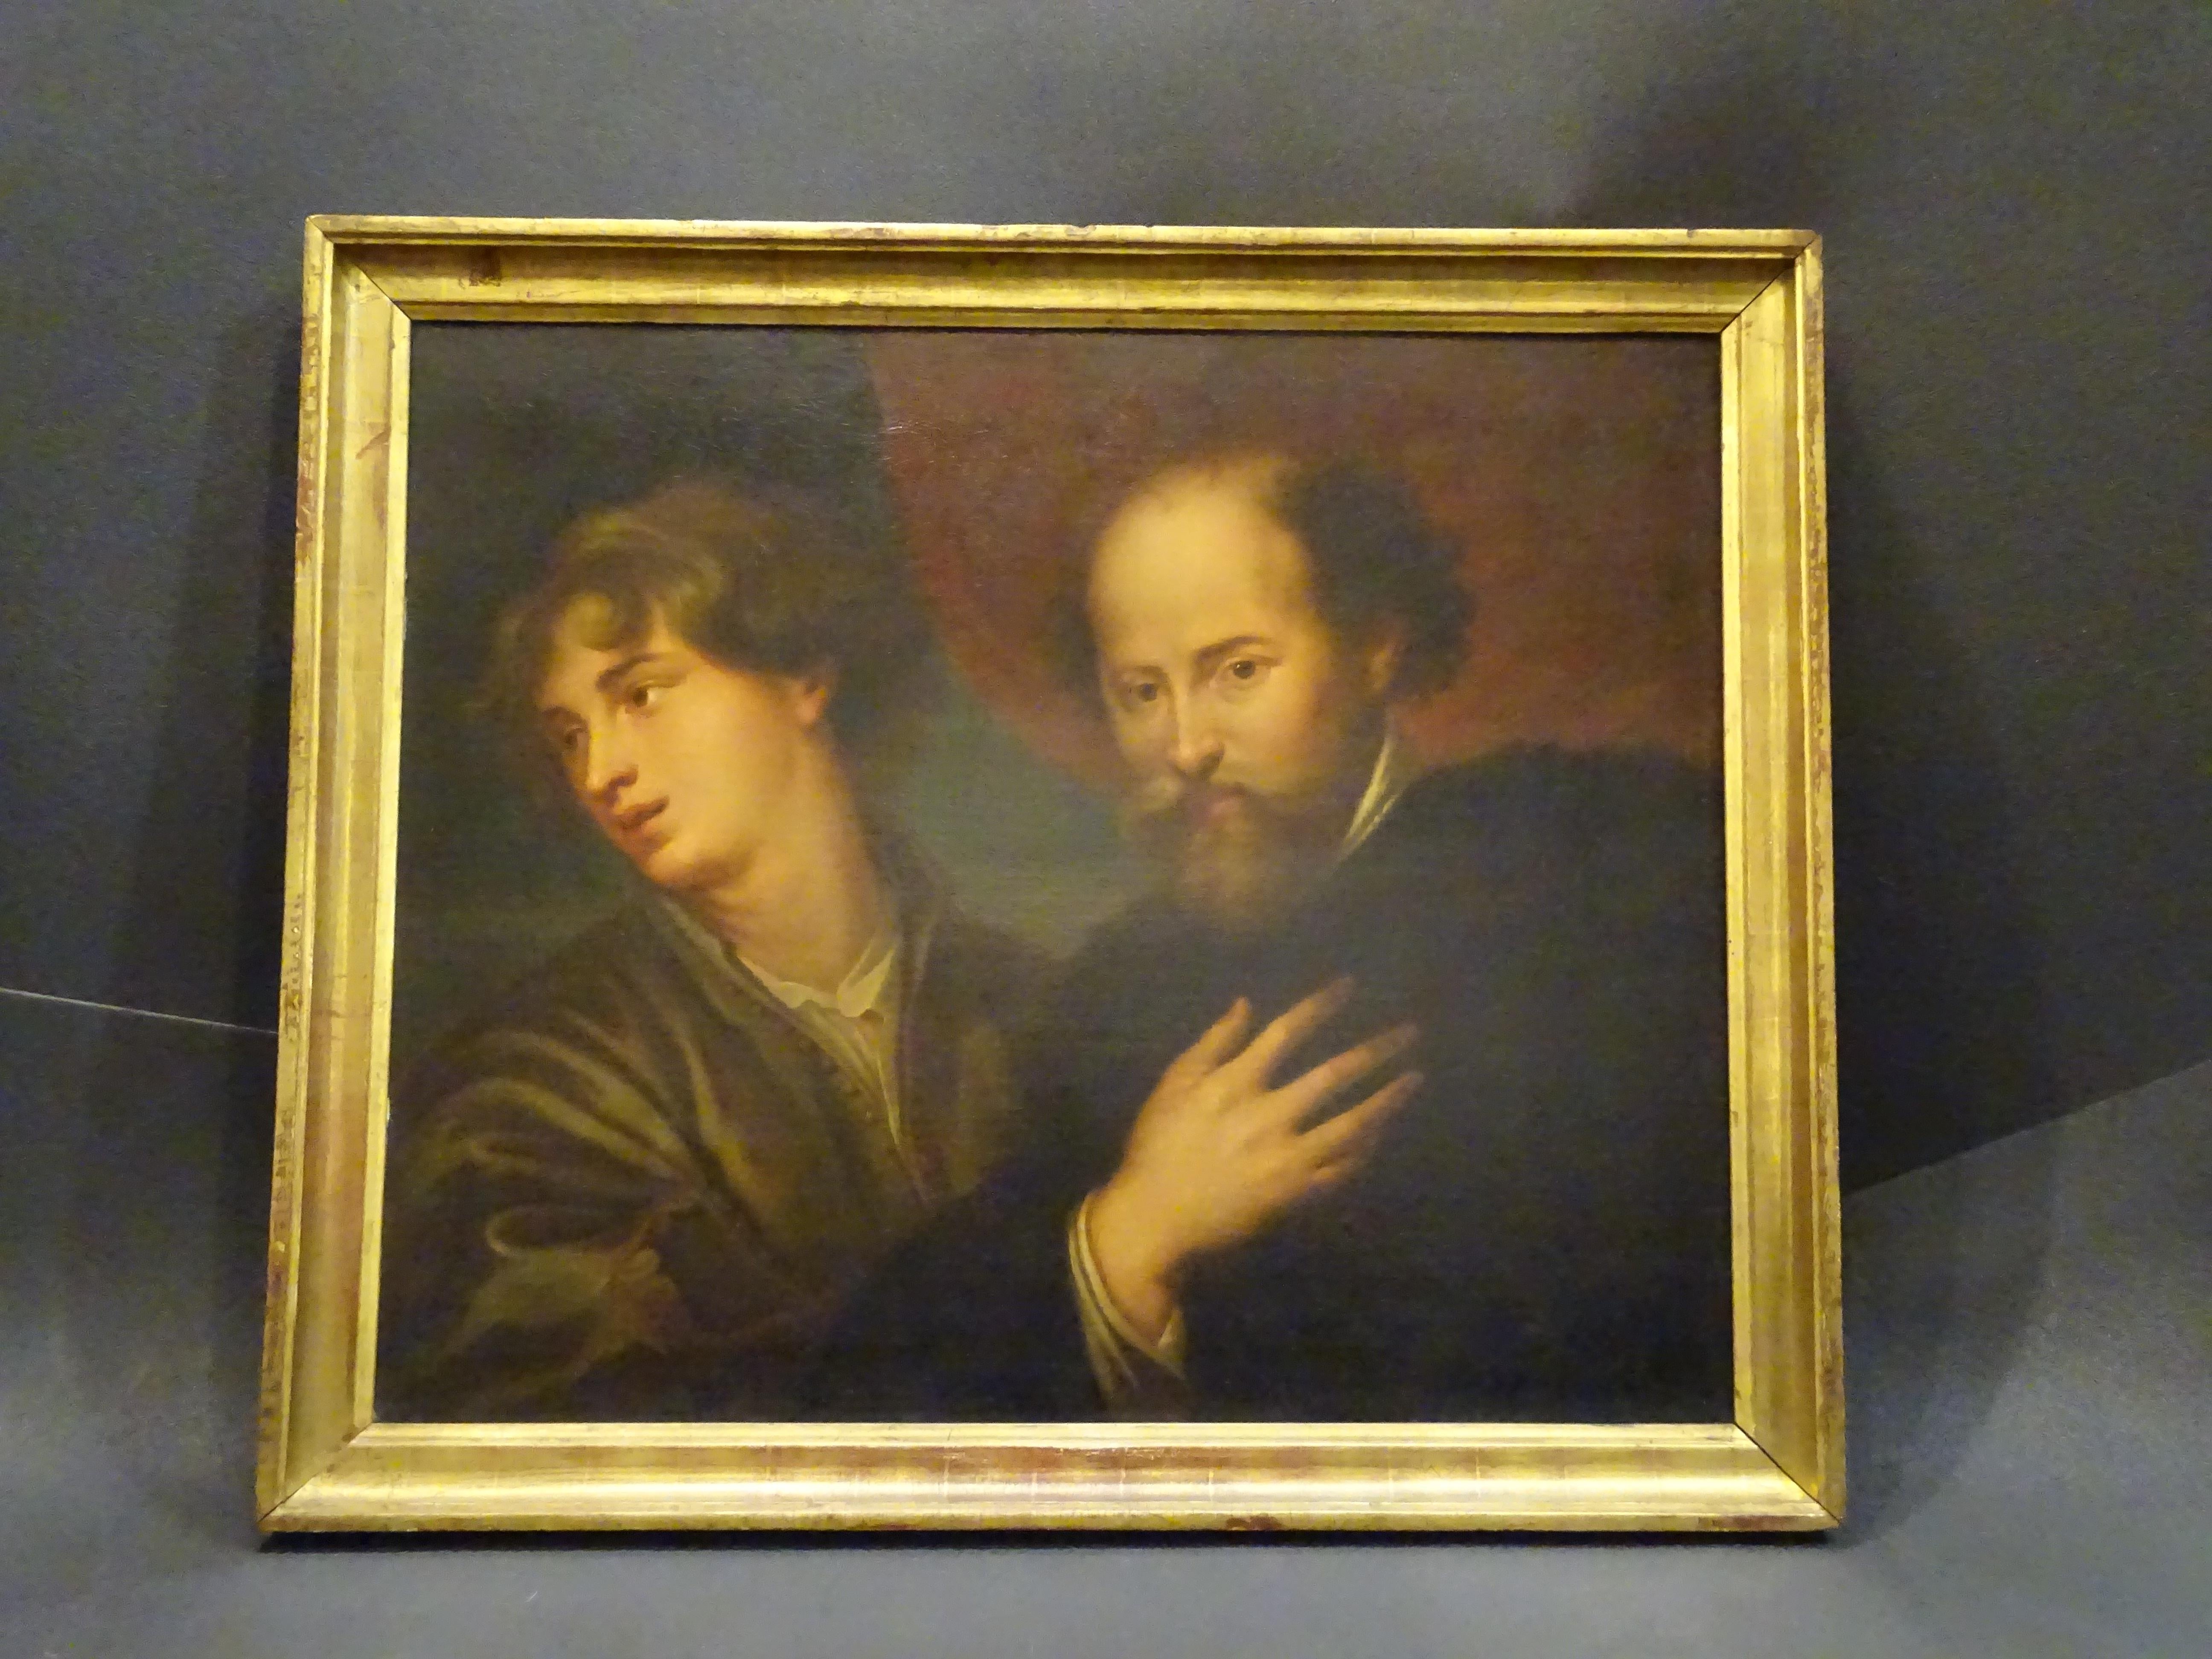 Wir bieten hier ein sehr interessantes Kunstwerk an, es handelt sich um ein außergewöhnliches italienisches Barock Öl /Leinwand, das ein Rubens und Van Dyck Portrait zeigt, Lehrer und Schüler zusammen !!!
Peter Paul Rubens (1577-1640) aus der